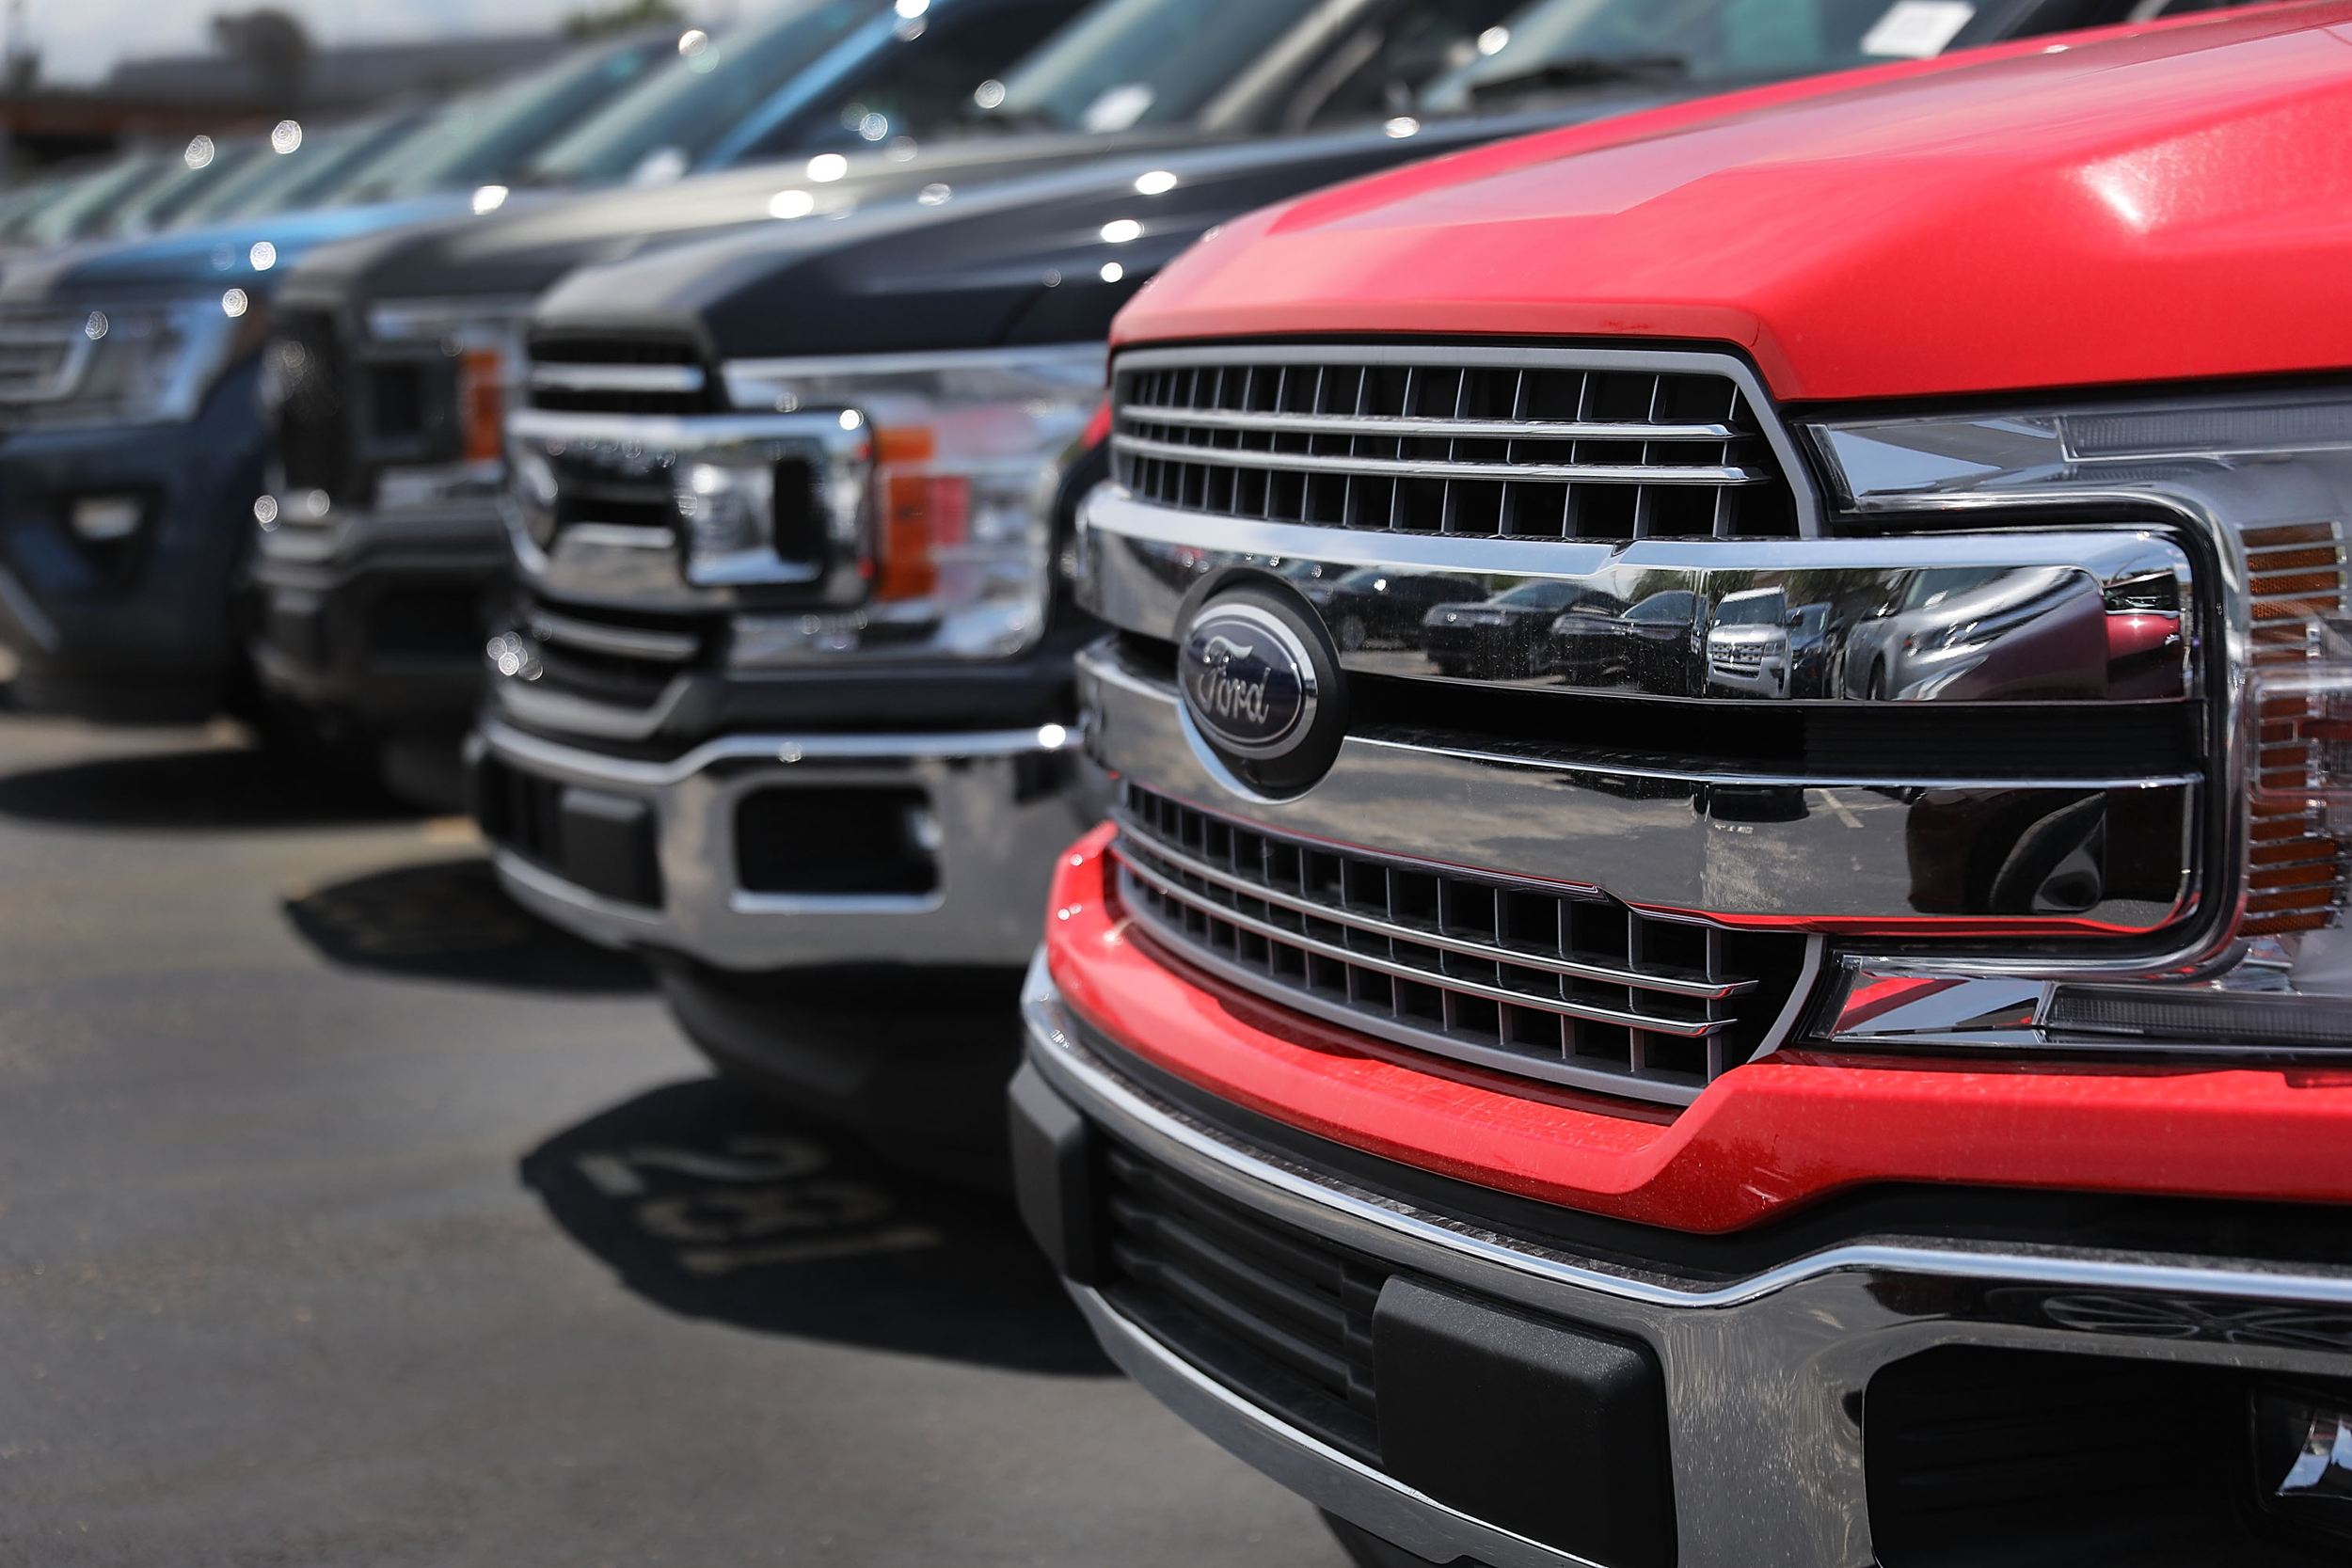 Conforme informações divulgadas pela Ford, o problema no novo recall afeta veículos com maior quilometragem (foto Flickr)